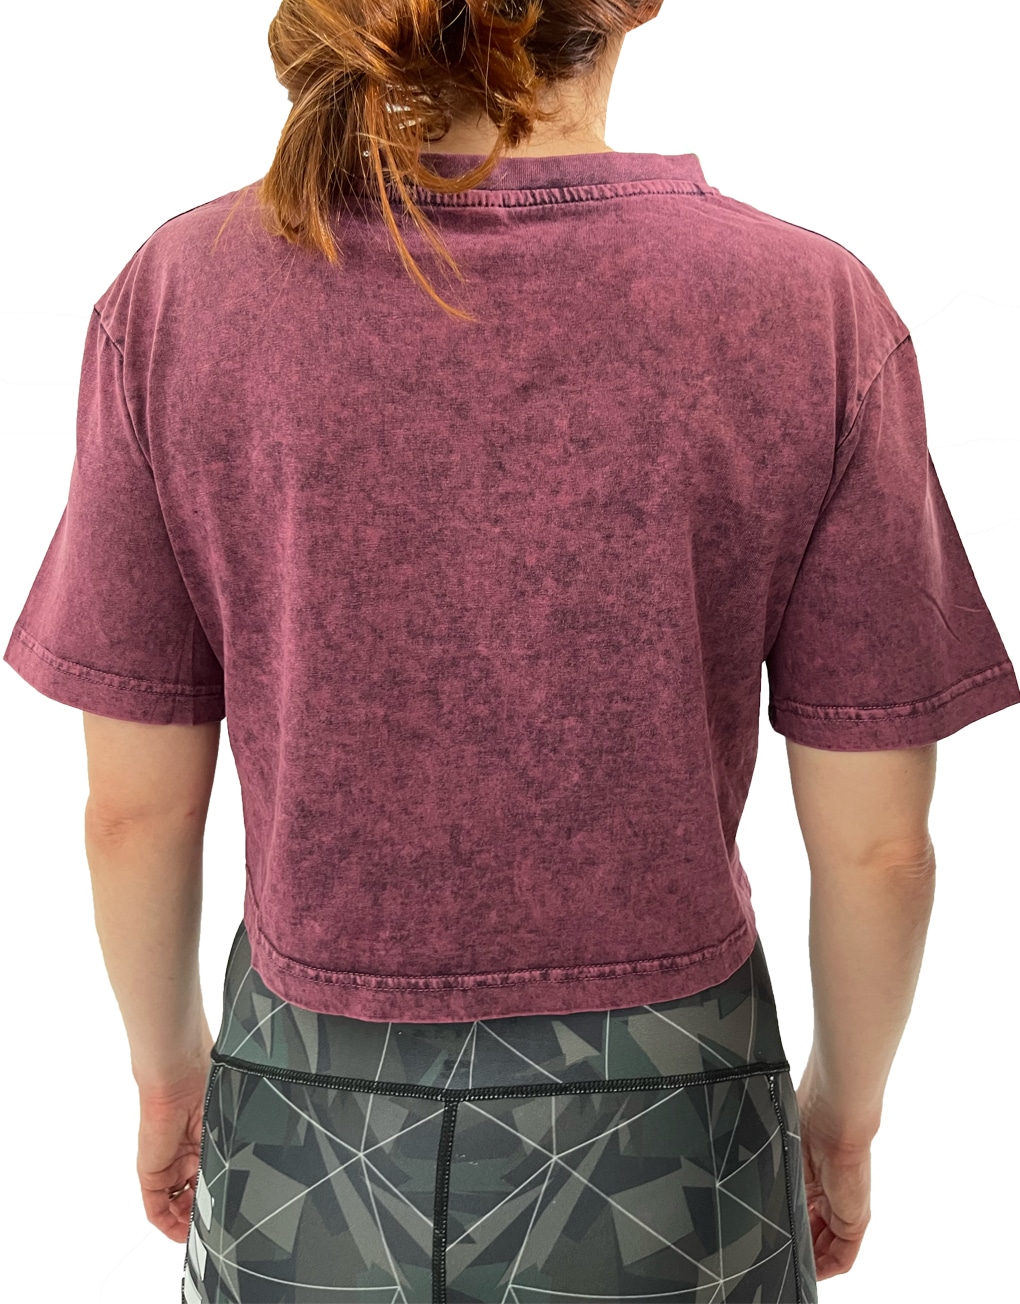 T- shirt Femme Crop Top délavé à l'acide - Fitness